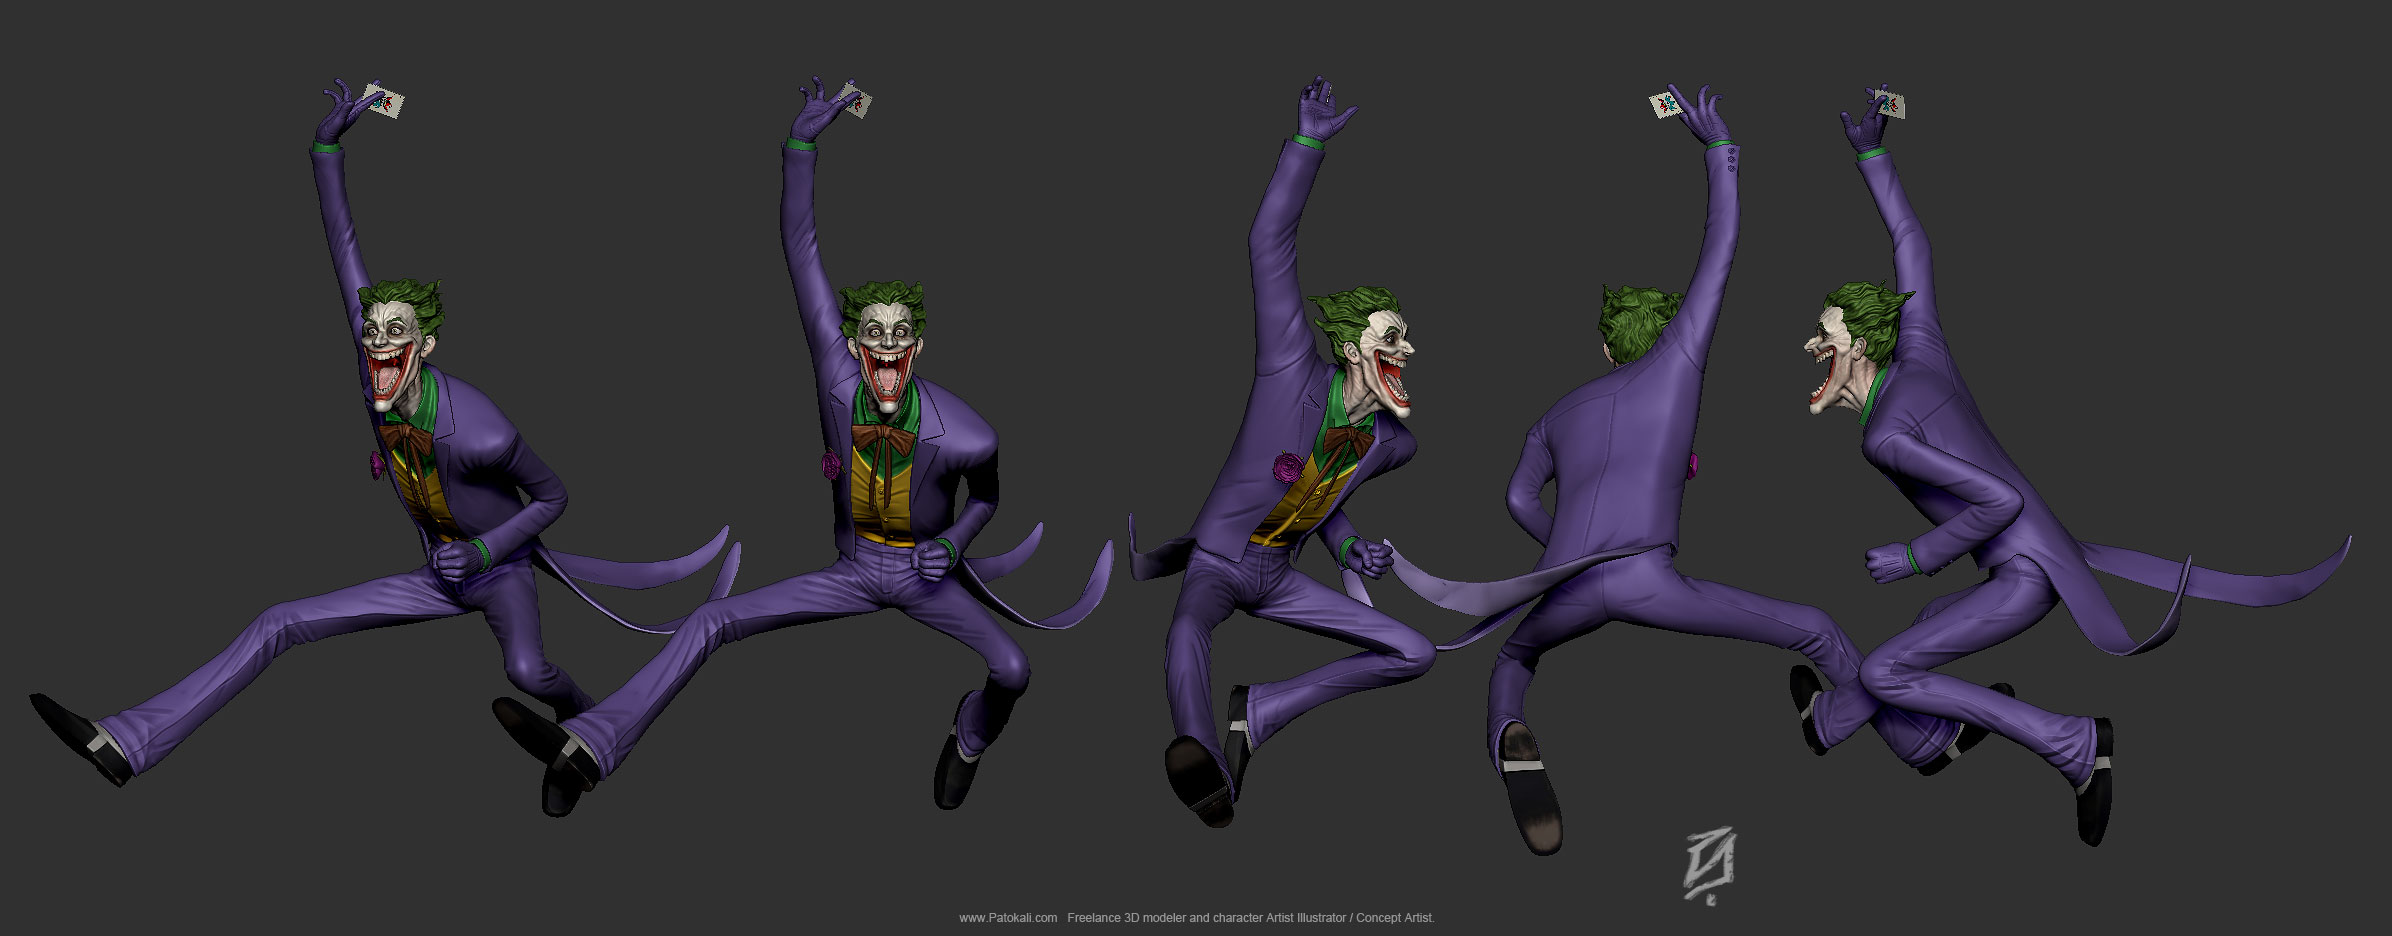 Psycho-Joker.jpg